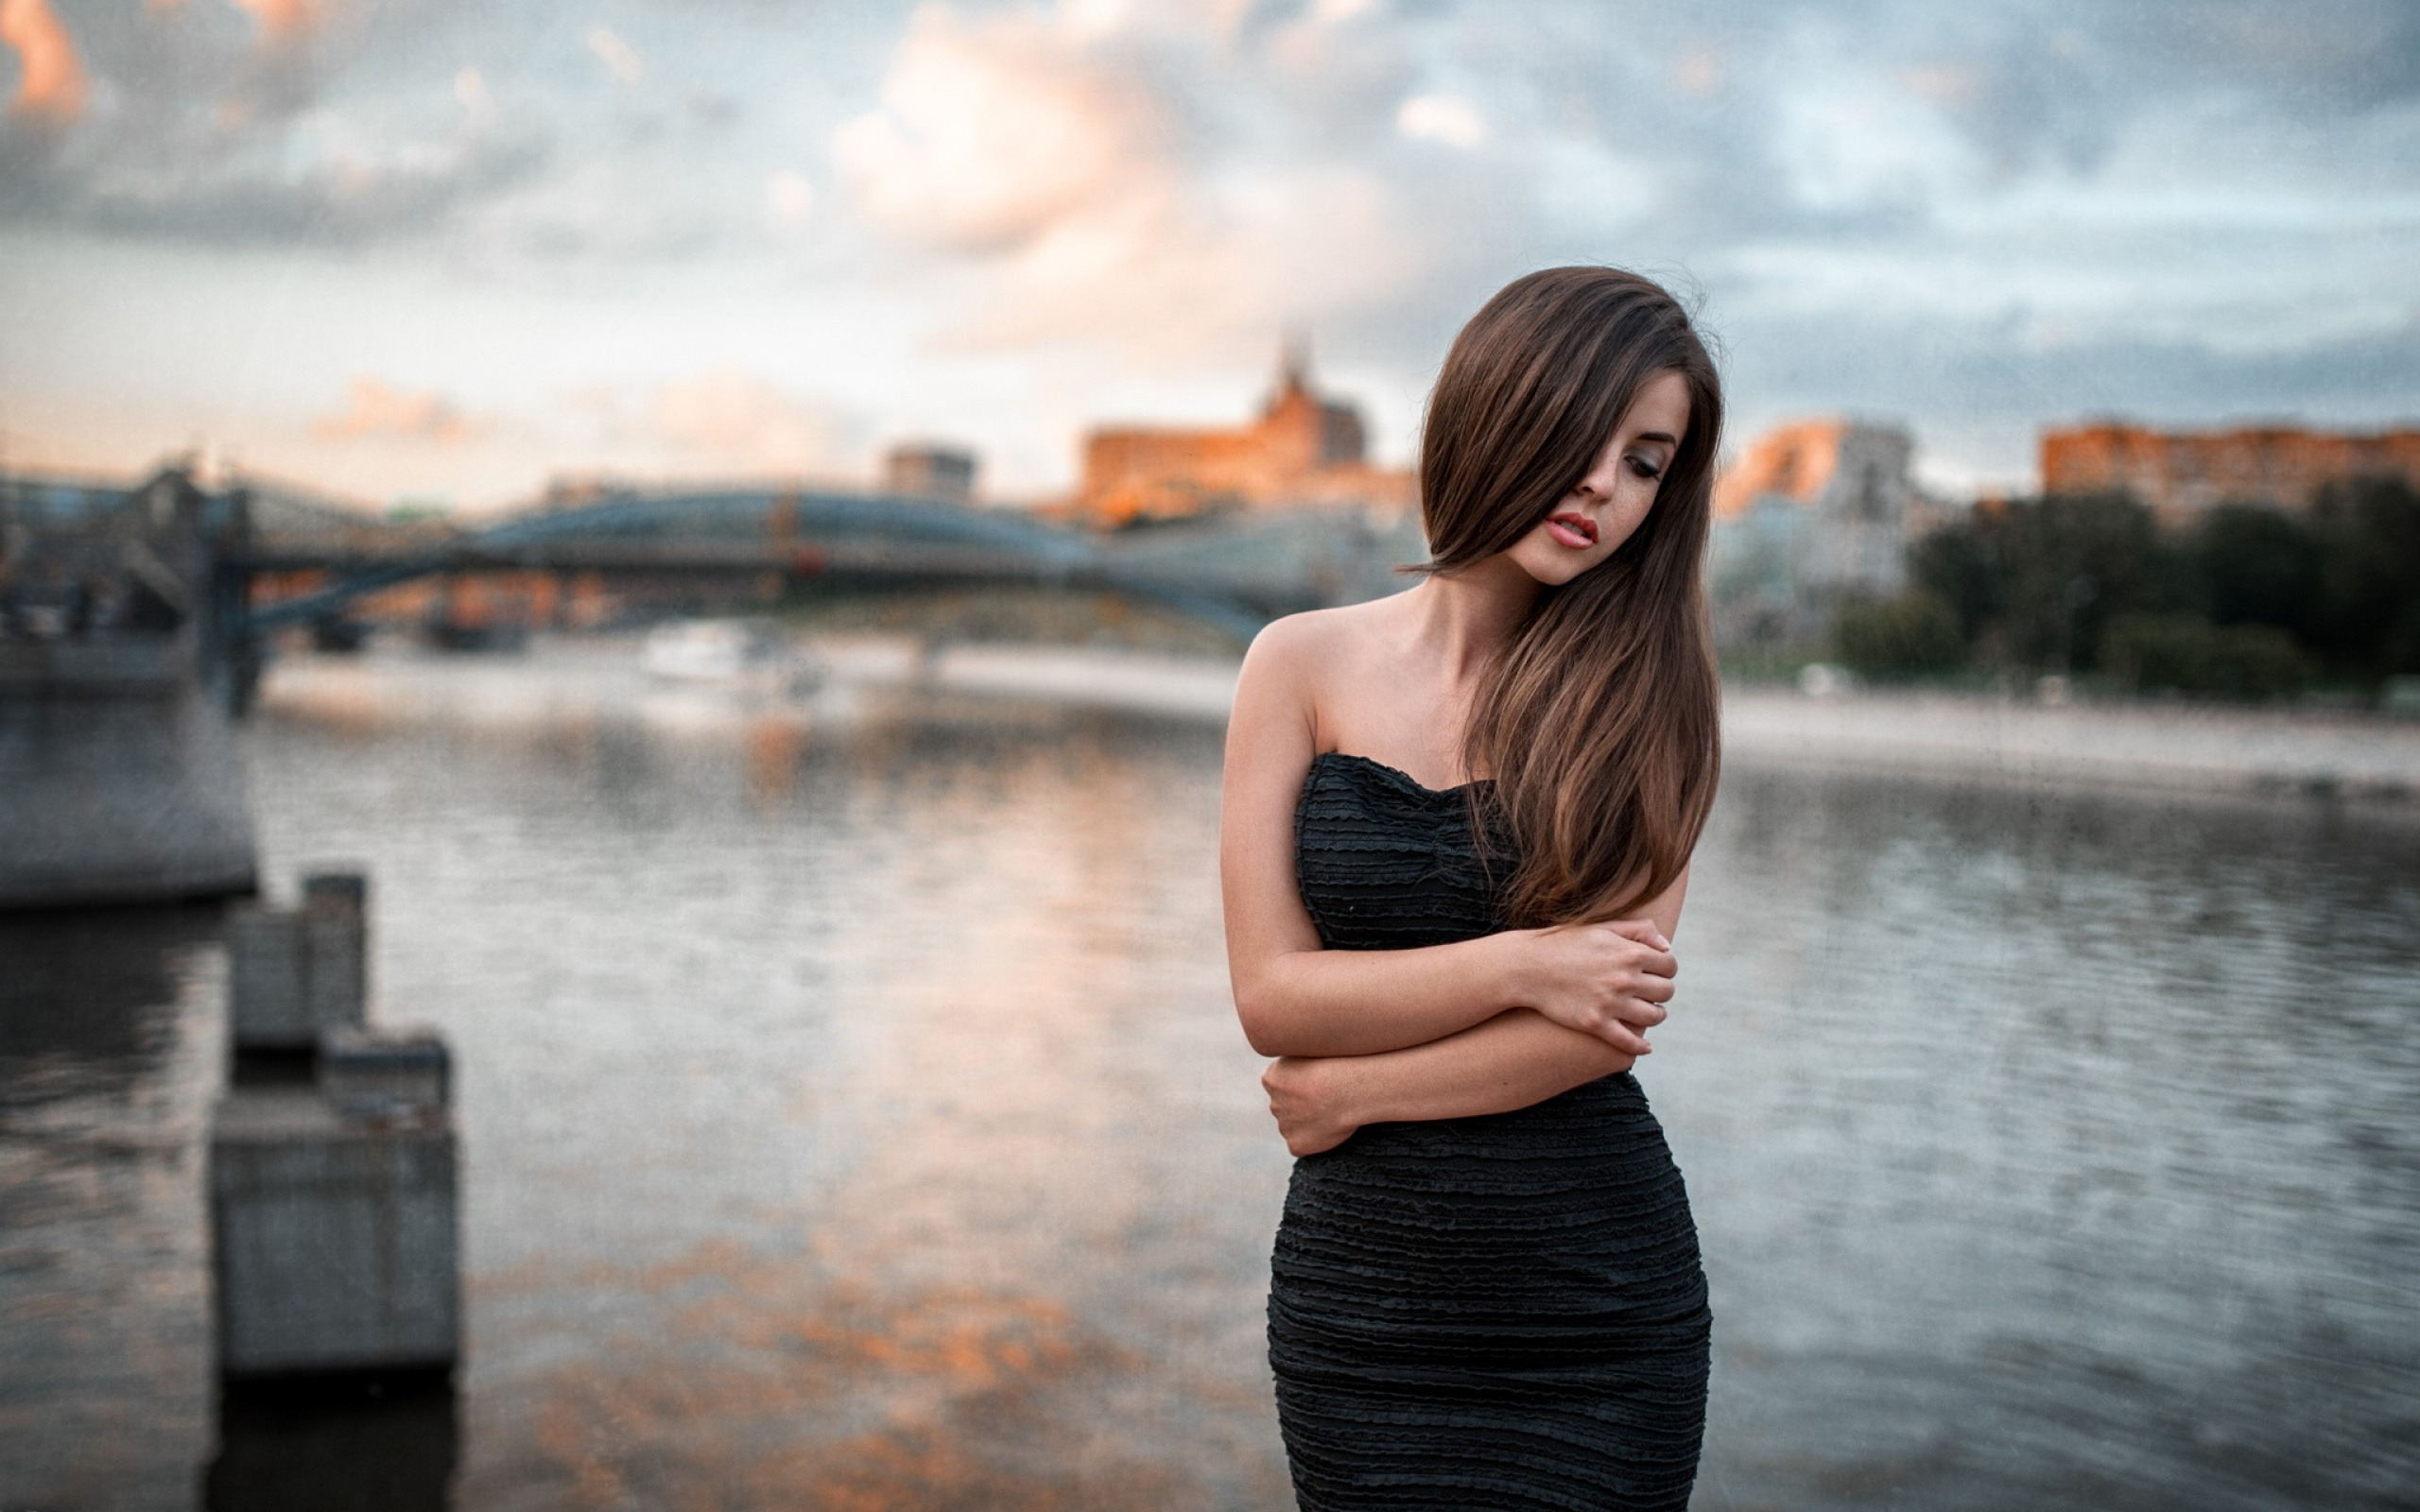 Image: Girl, river, bridge, brunette, standing, black dress, hair, washed out